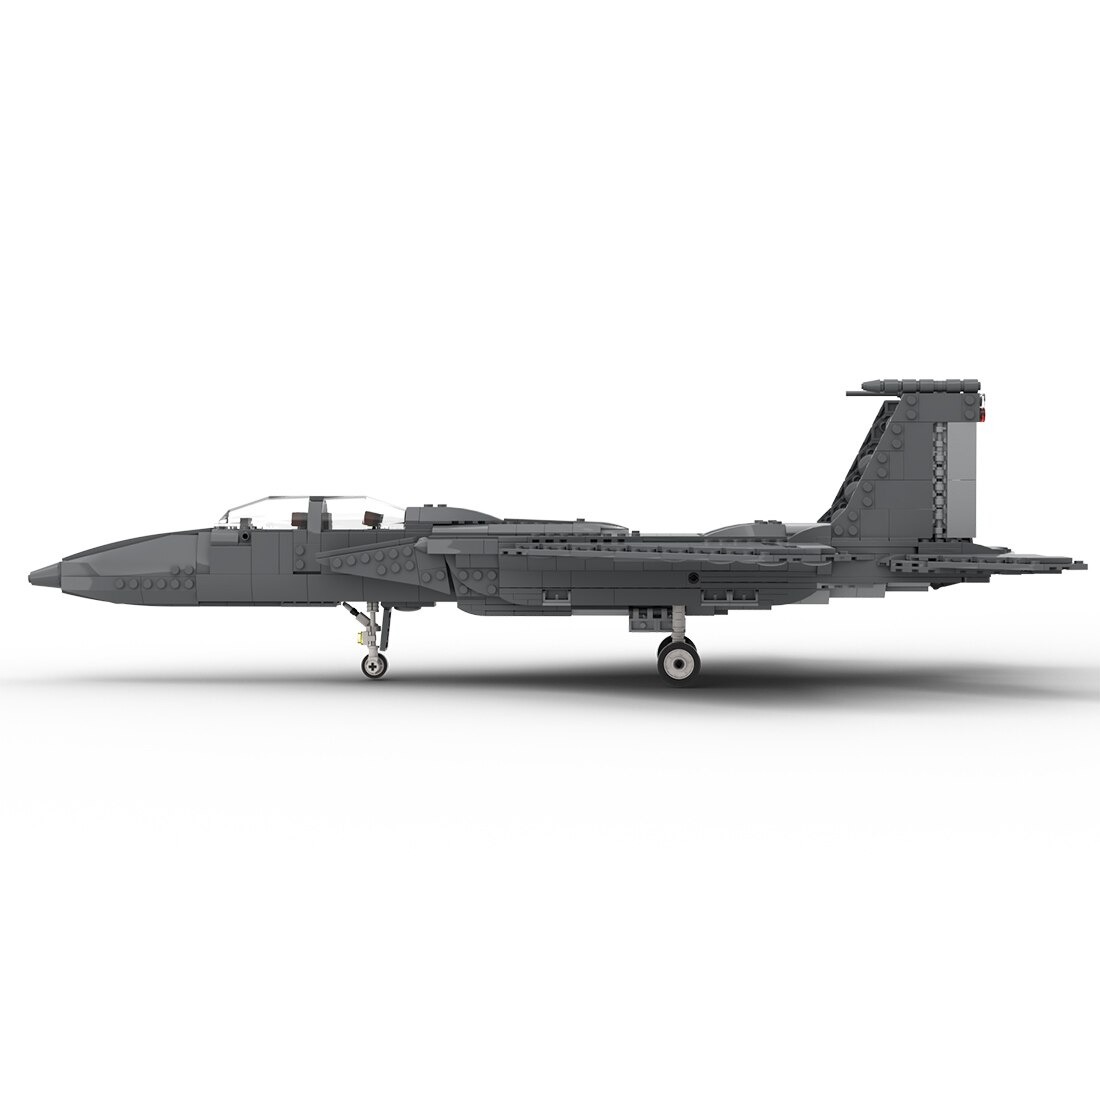 Authorized Moc 29950 F 15 E Strike Eagle Main 1.jpg